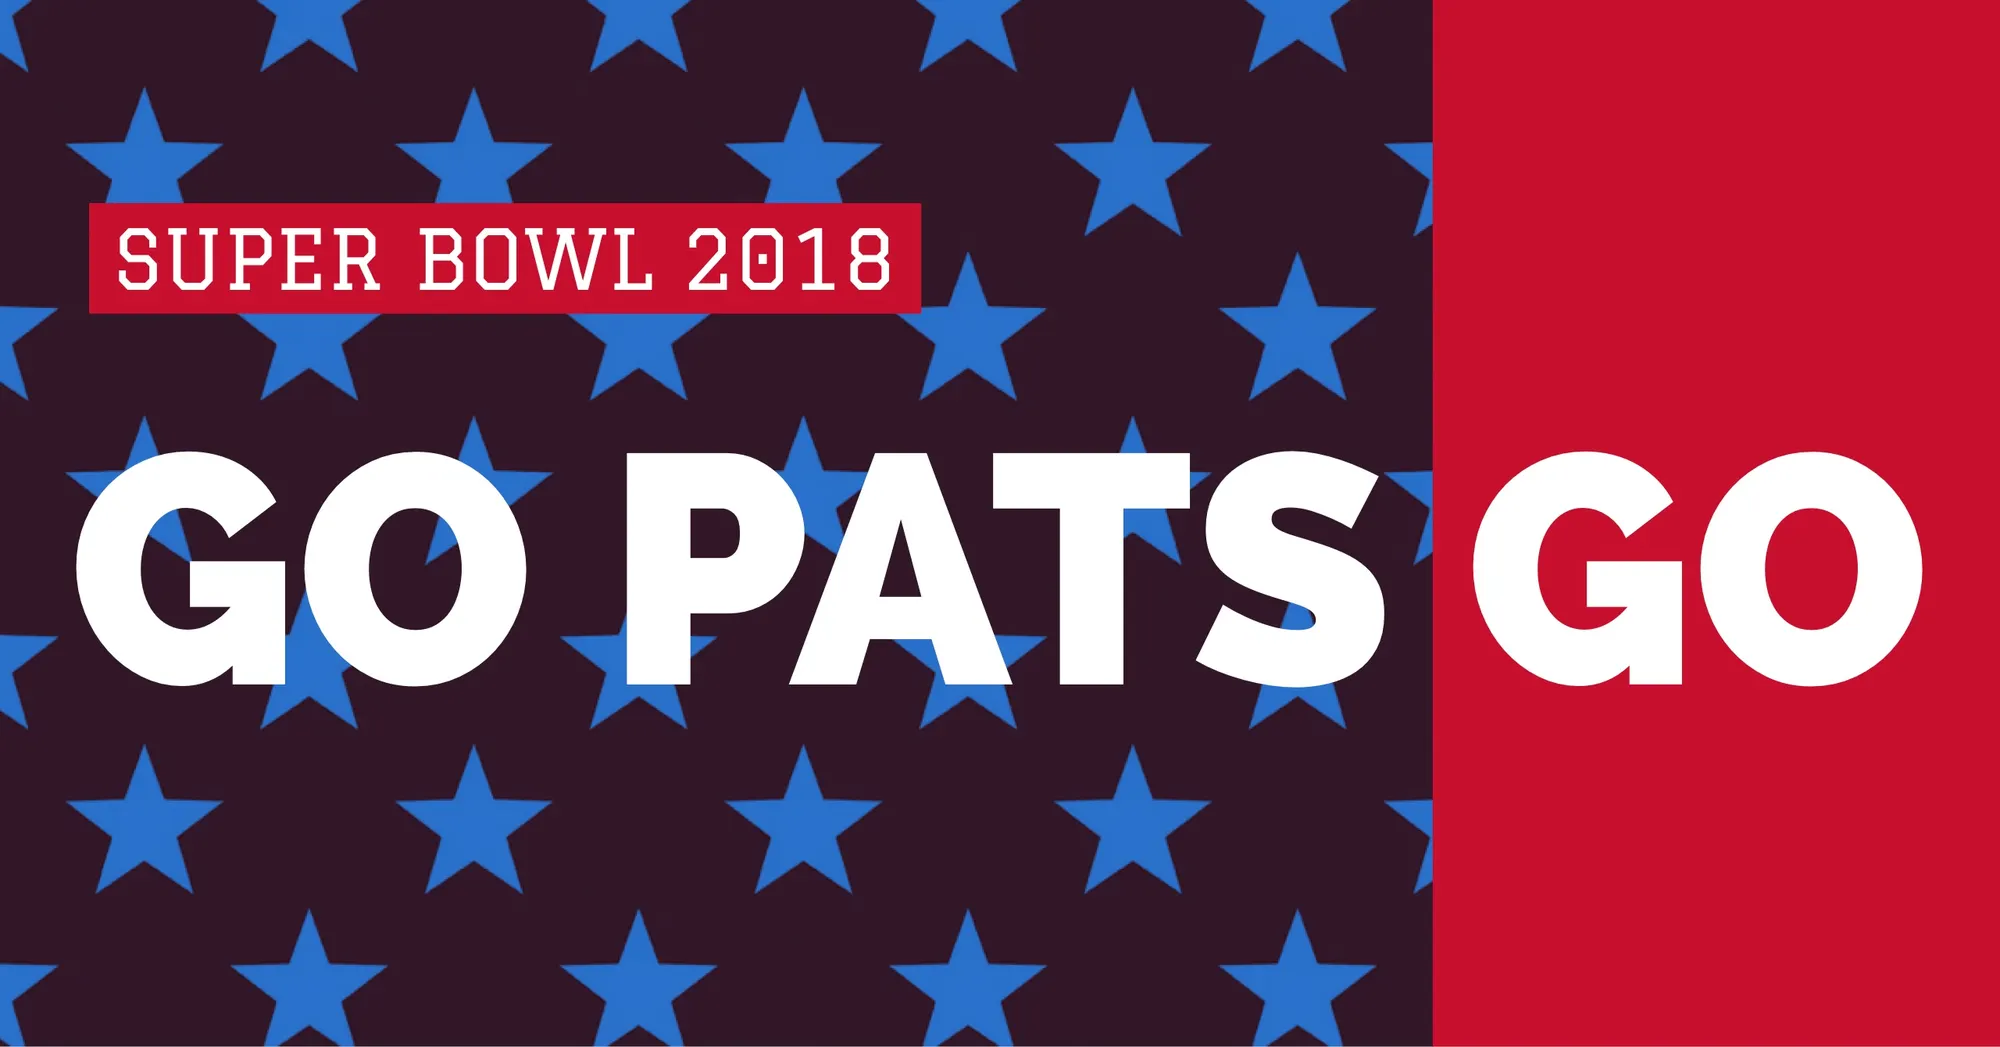 New England Patriots Fan Super Bowl Social Media Post Graphic